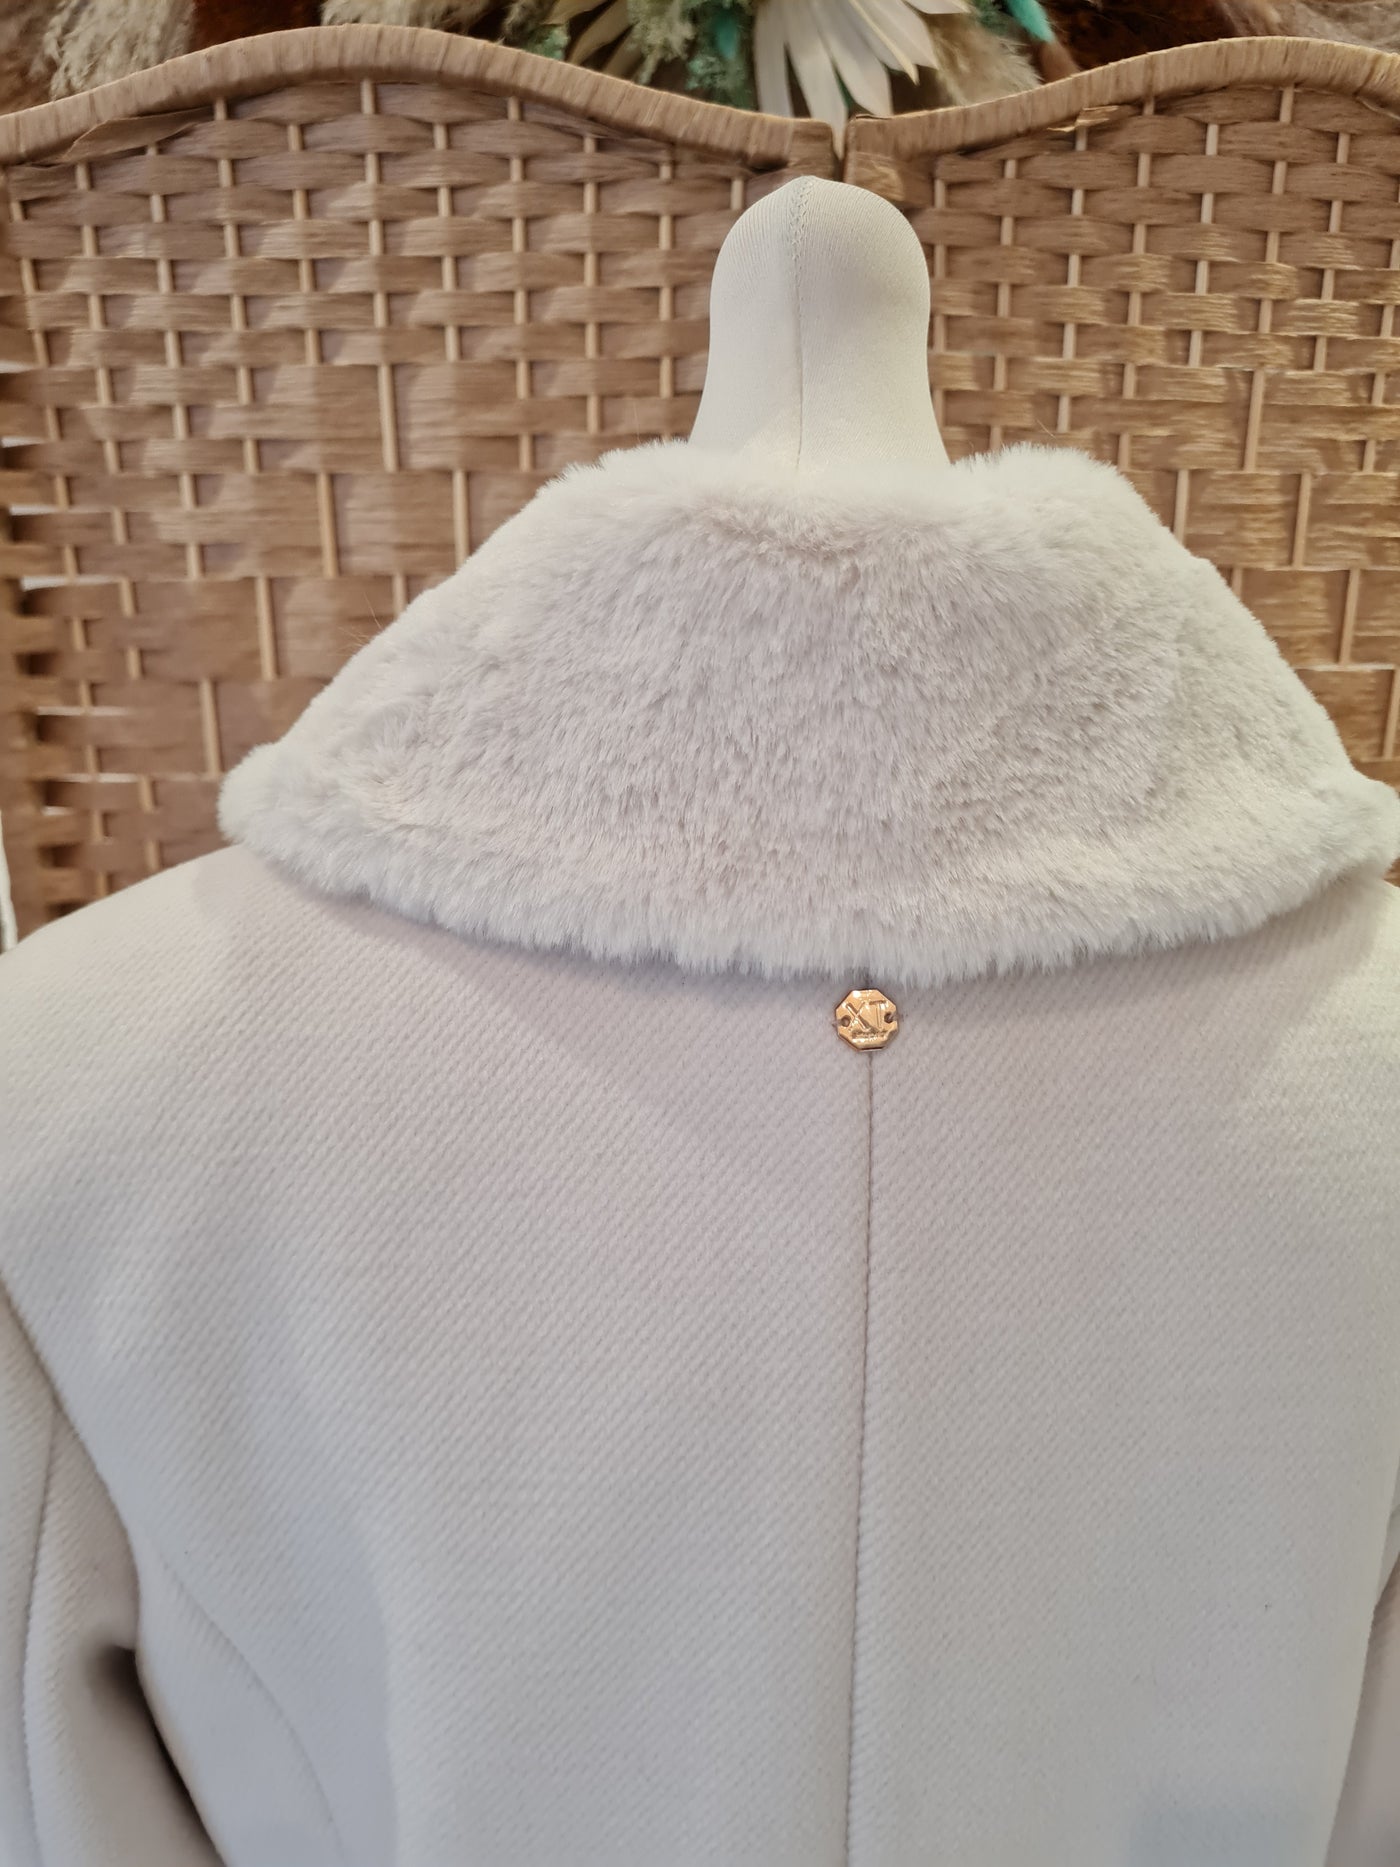 XT Studio winter white coat 8 New